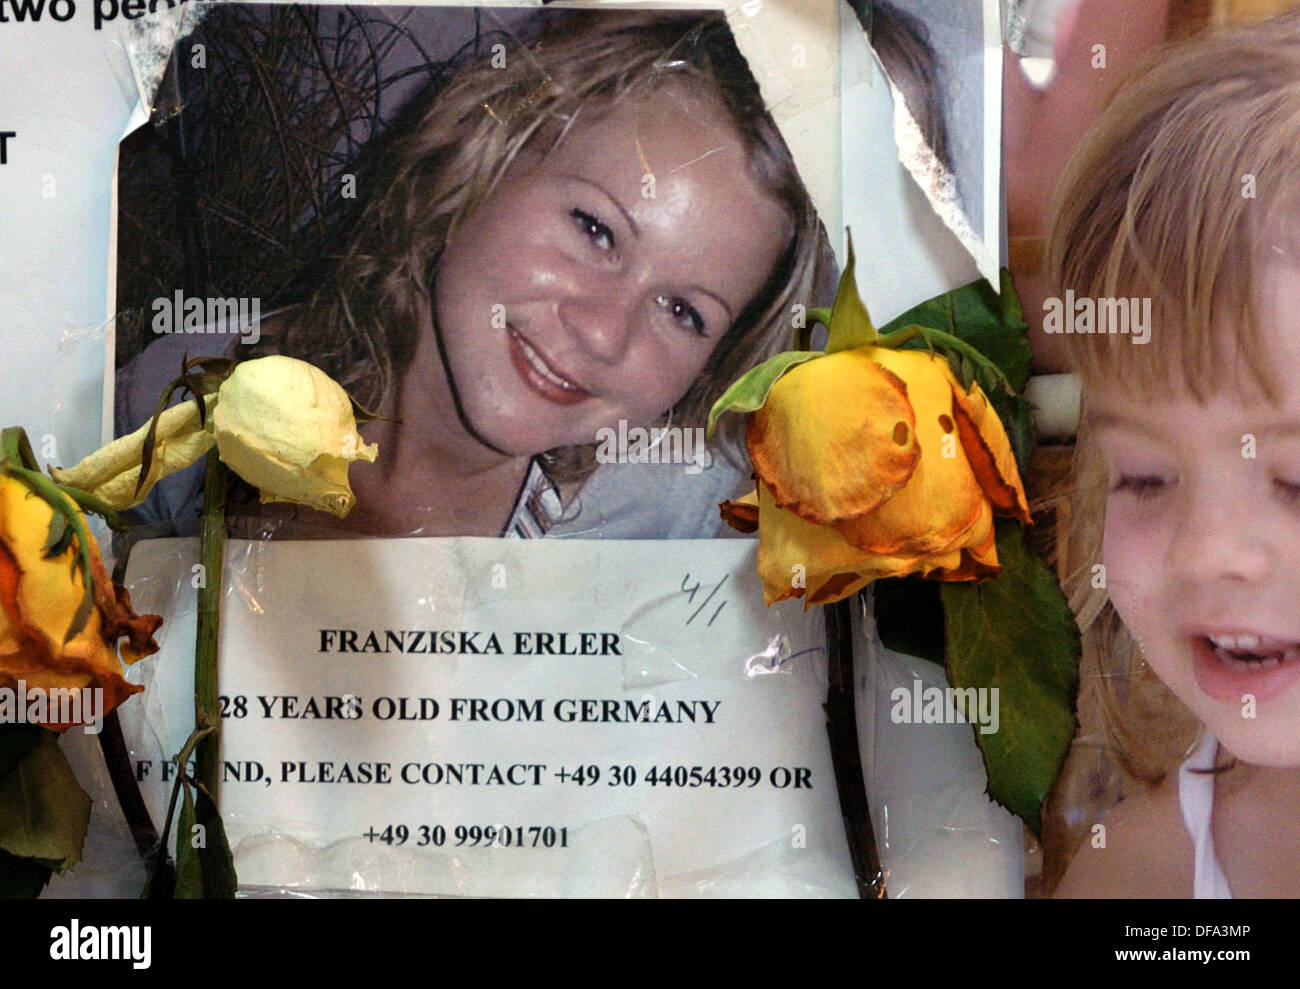 Immagine mancante del turista tedesco Franziska Erler il 7 di gennaio del 2005. Un maremoto in Thailandia ha ucciso più di 5 mila persone due settimane prima, numerosi turisti tedeschi sono ancora mancanti. Foto Stock